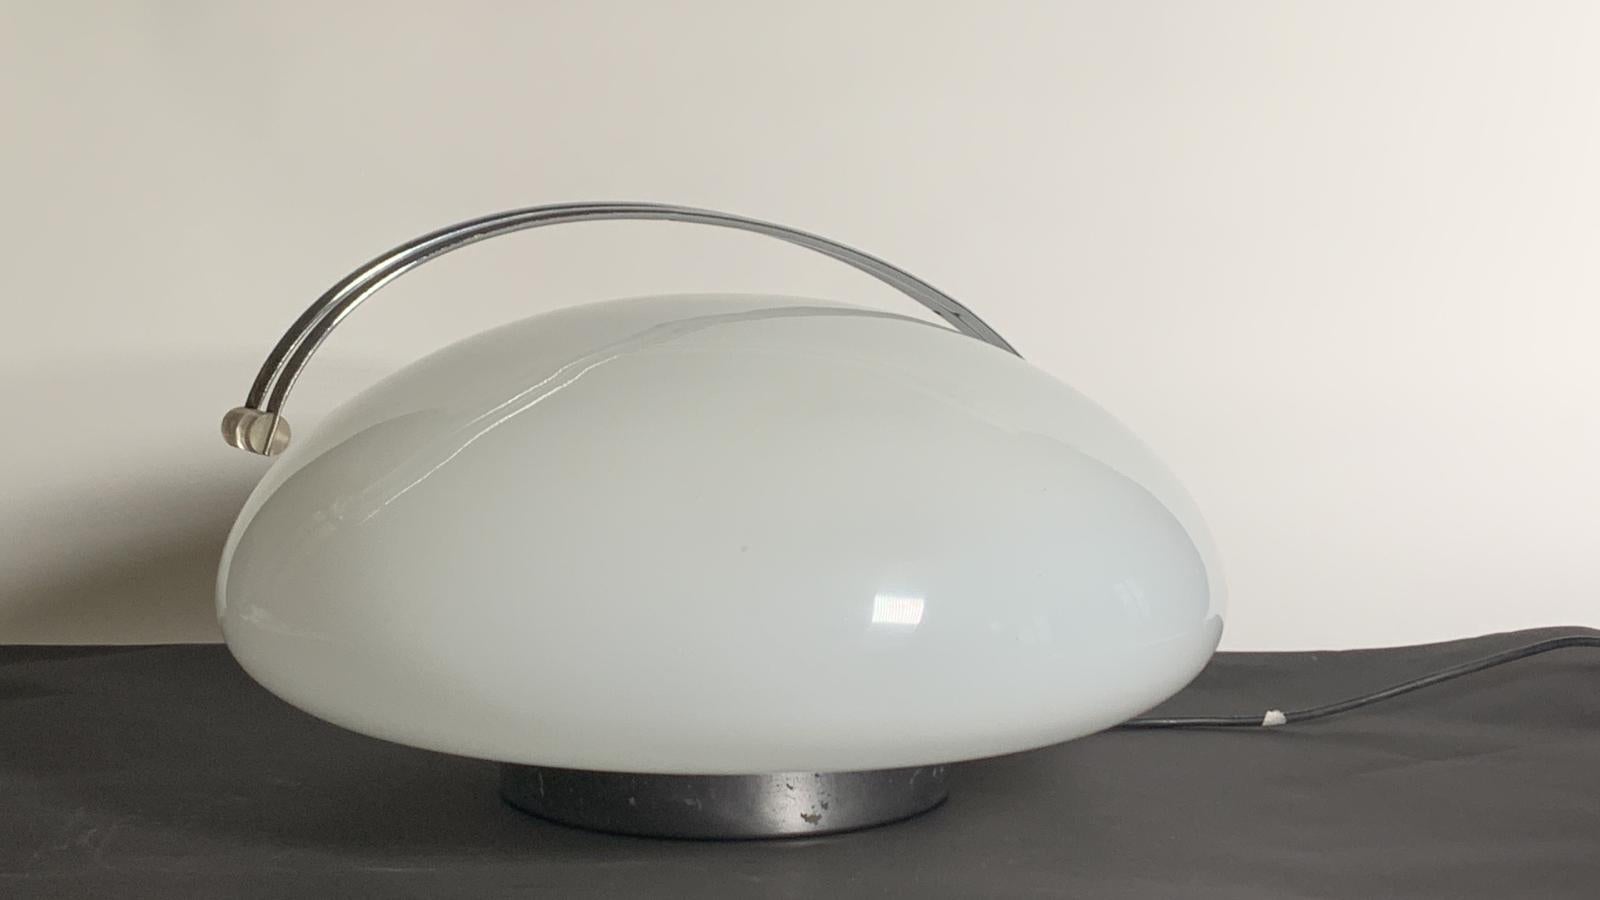 Die Il Cammino Stehleuchte wurde 1972 von Angelo Mangiarotti für Iter Elettronica entworfen. Sie besteht aus Opalglas mit einem verchromten Sockel. Über einen berührungsempfindlichen Schalter lässt sich diese Leuchte ein- und ausschalten und dimmen.